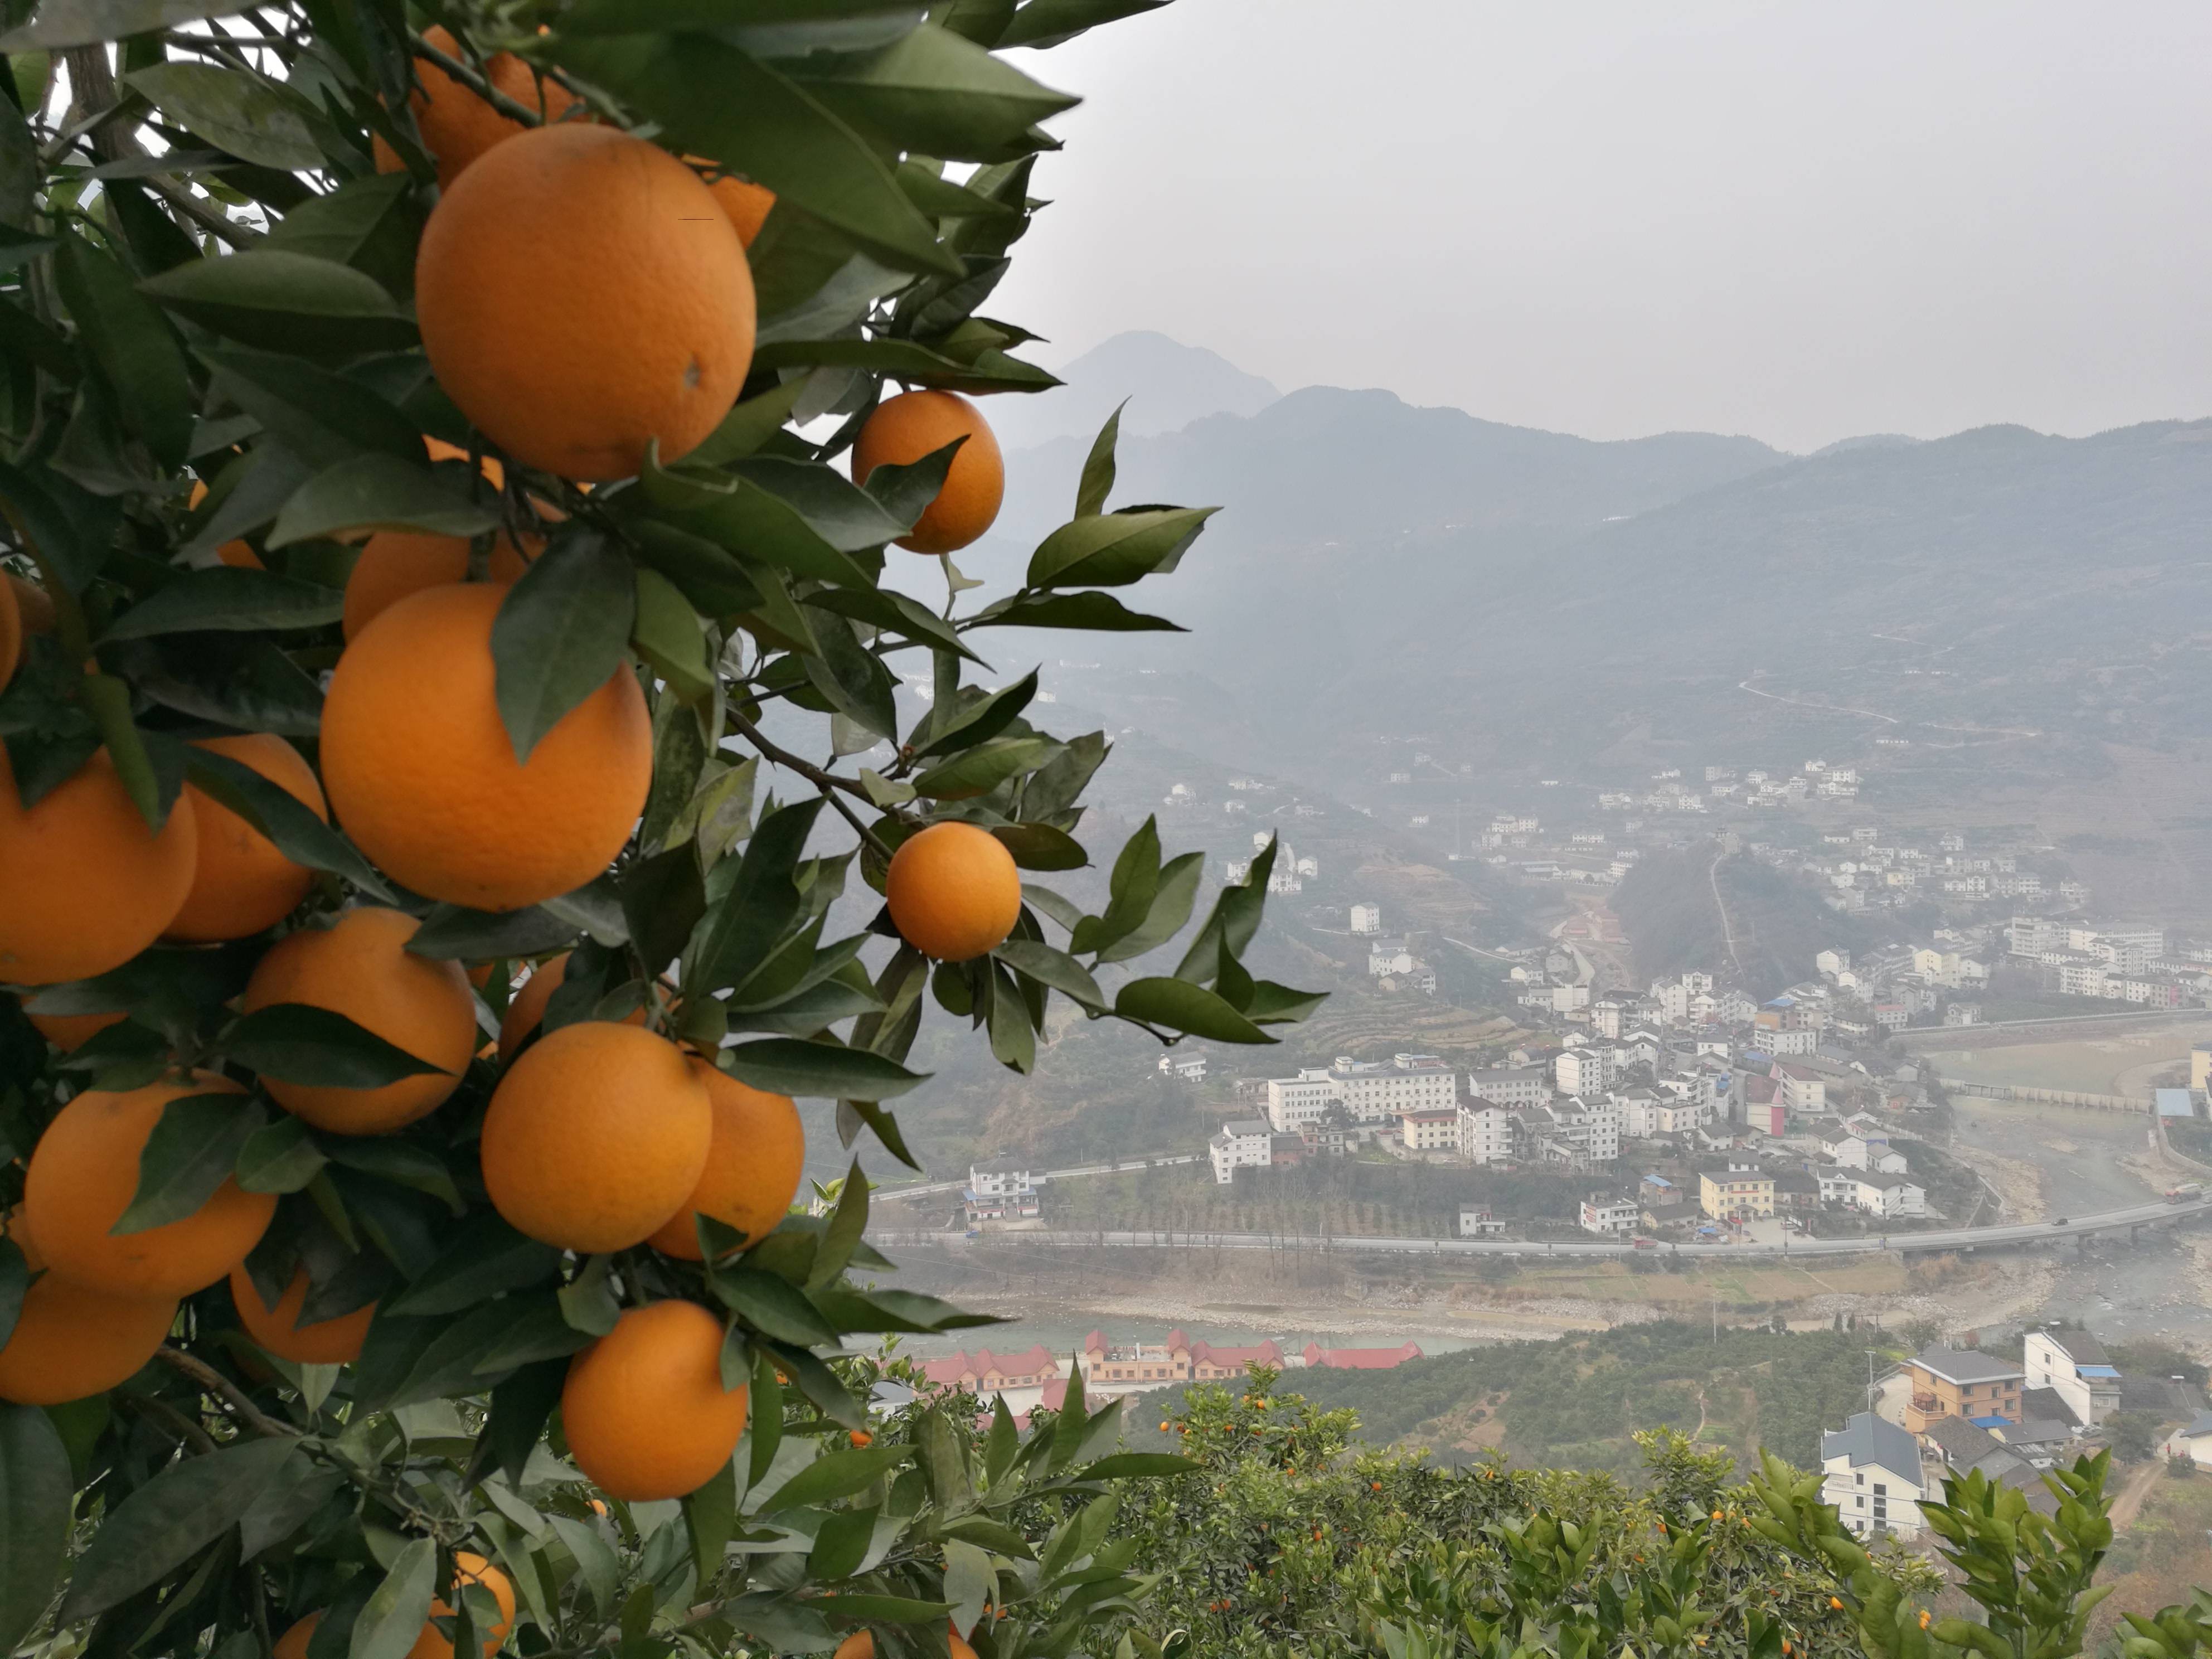 脐橙行情实时播报：湖北宜昌市秭归县，甜橙成熟期1月—2月底  因上市期短，形似鸭蛋橙，不被果商了解。所以价格便宜。
皮薄味甜  个头均匀  果面干净
统果0